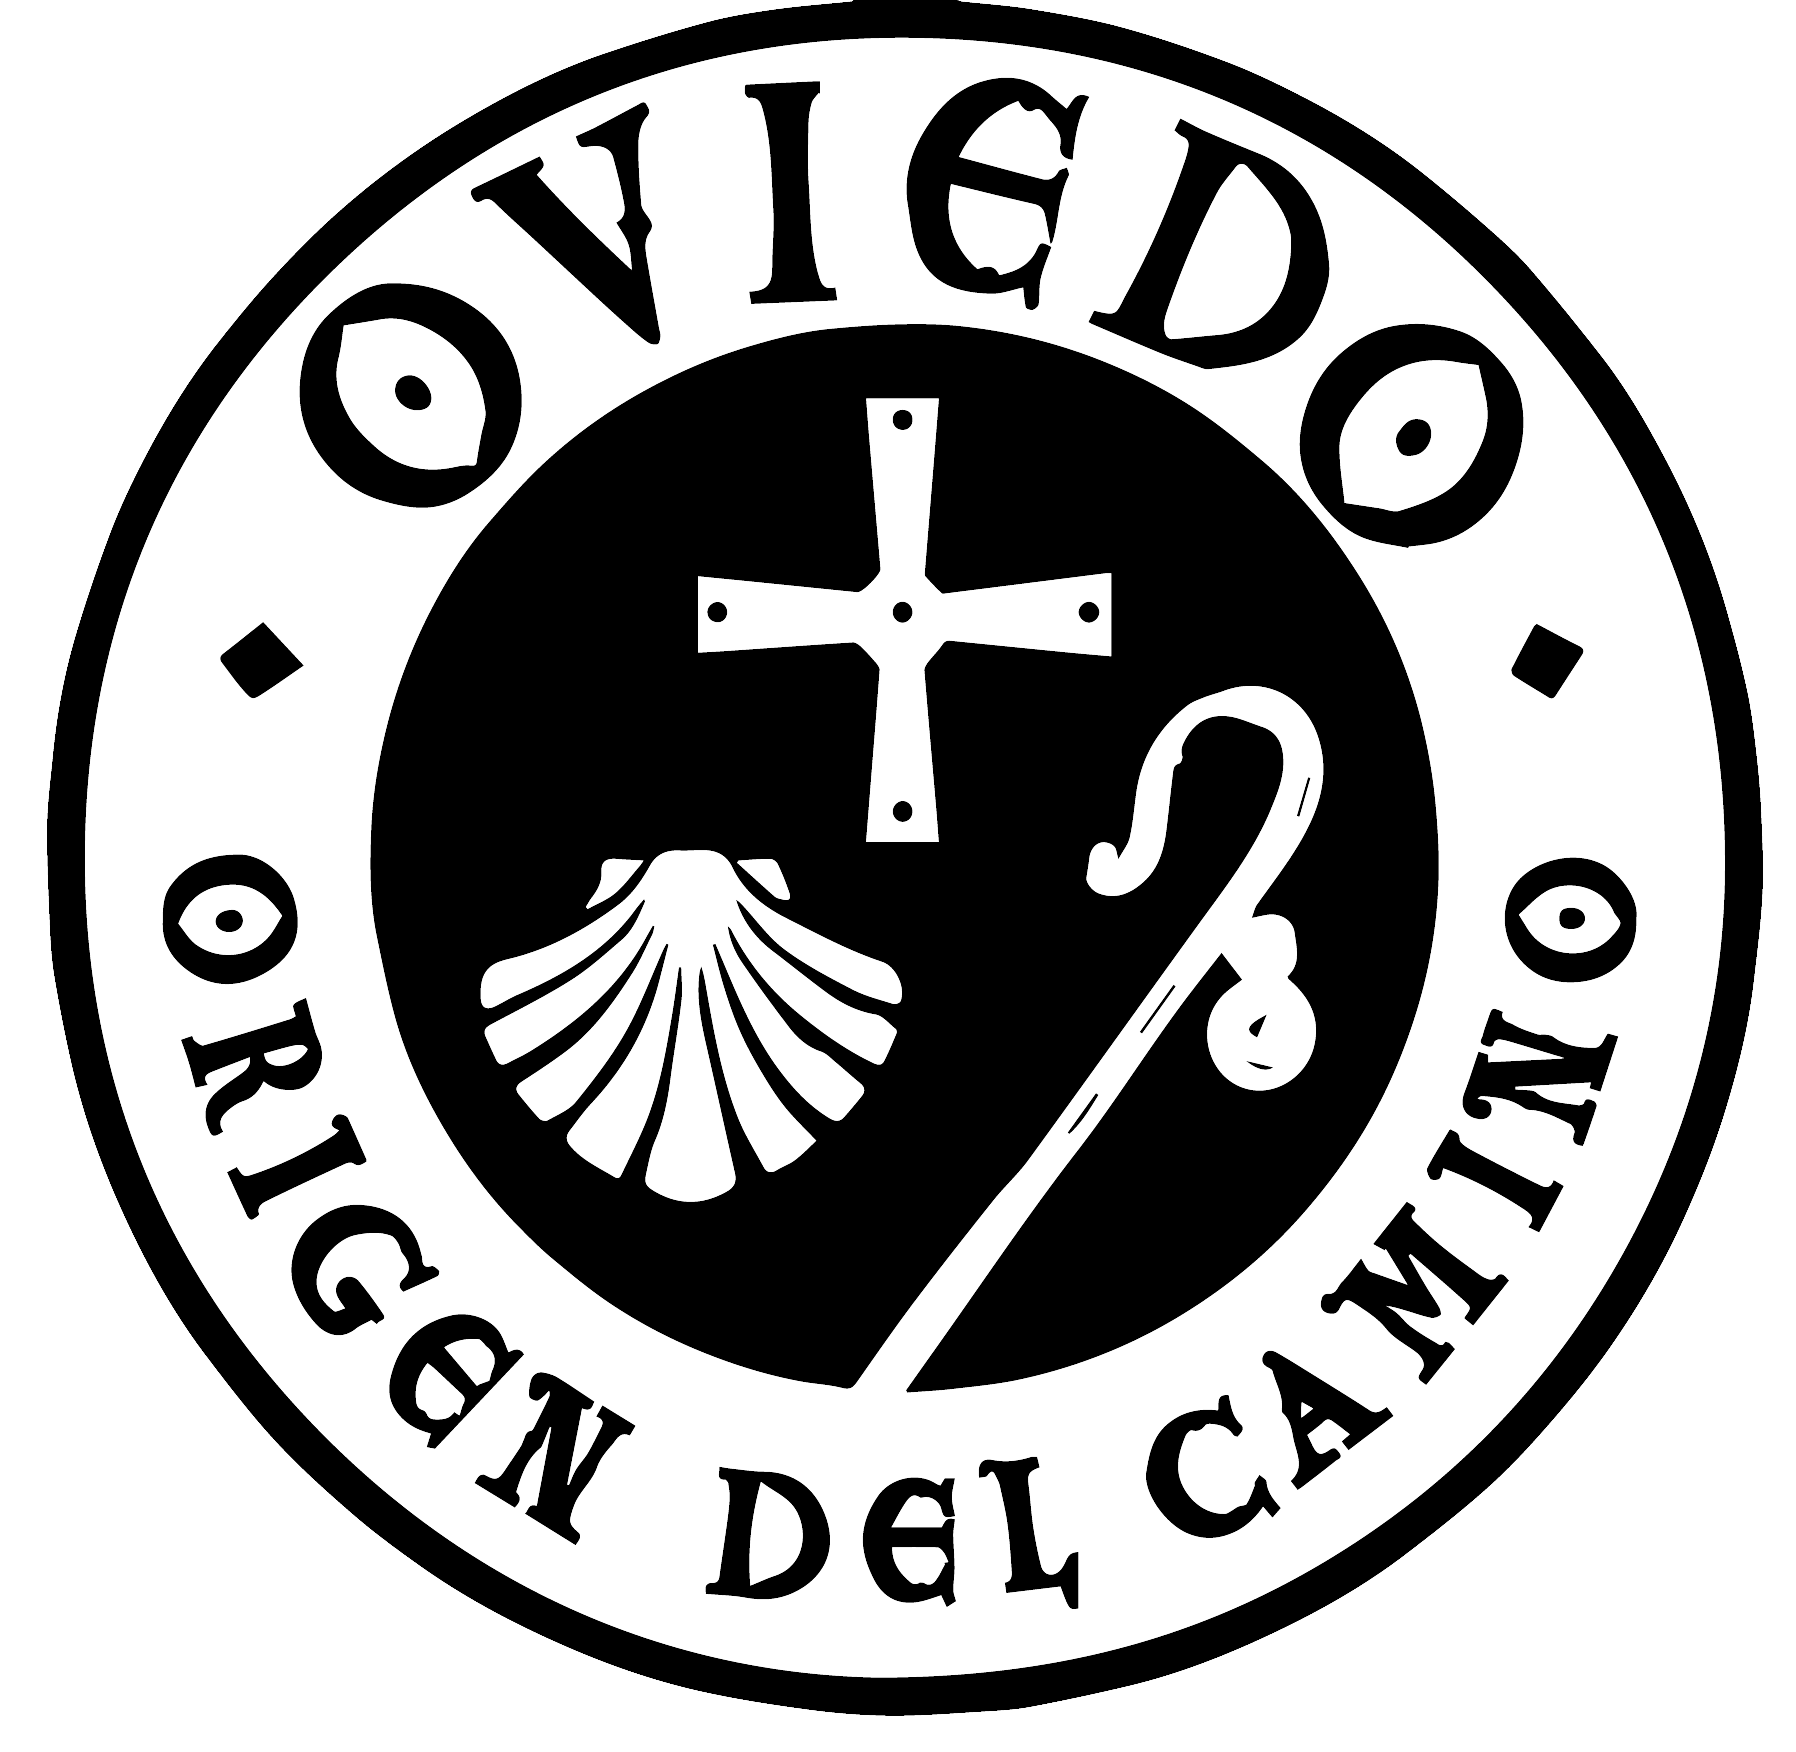 Logo oficial del Camino Primitivo, en el que aparece representado dentro de un círculo el bordón, la concha y la cruz de Santiago, rodeados del lema 'Oviedo, origen del camino'